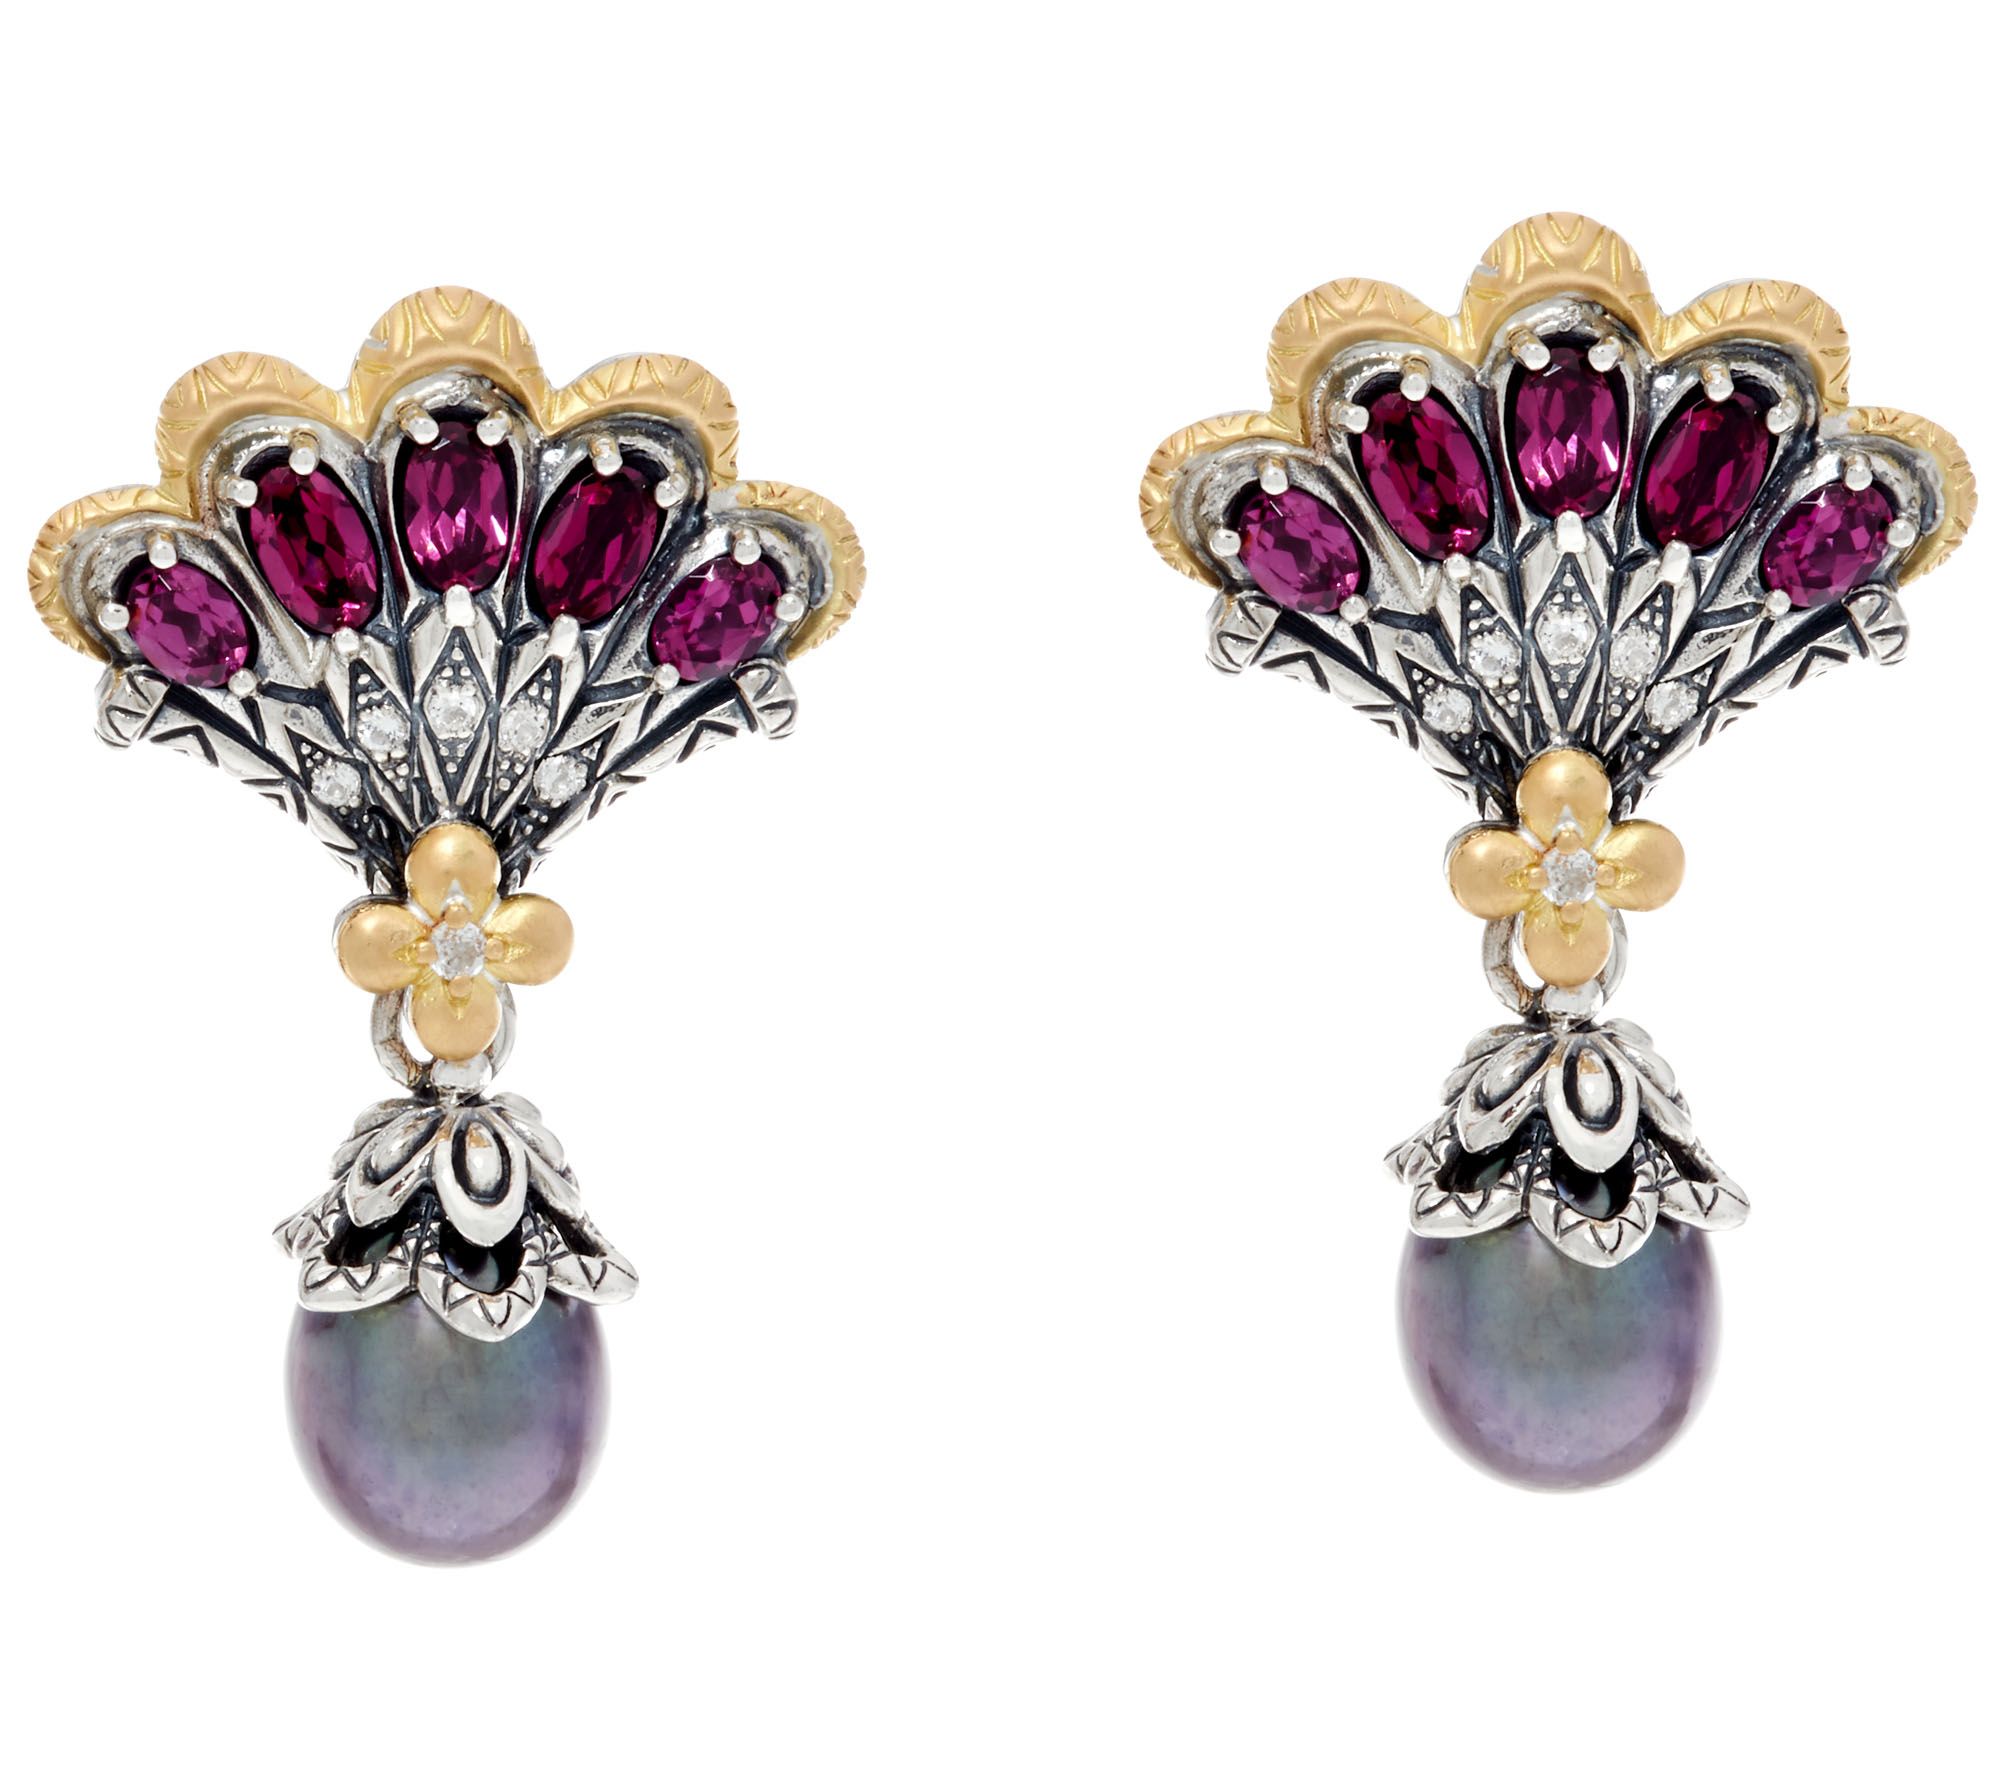 jewelry earrings barbara bixby sterling u0026 18k cultured pearl mermaid earrings - page 1 RWZTKED